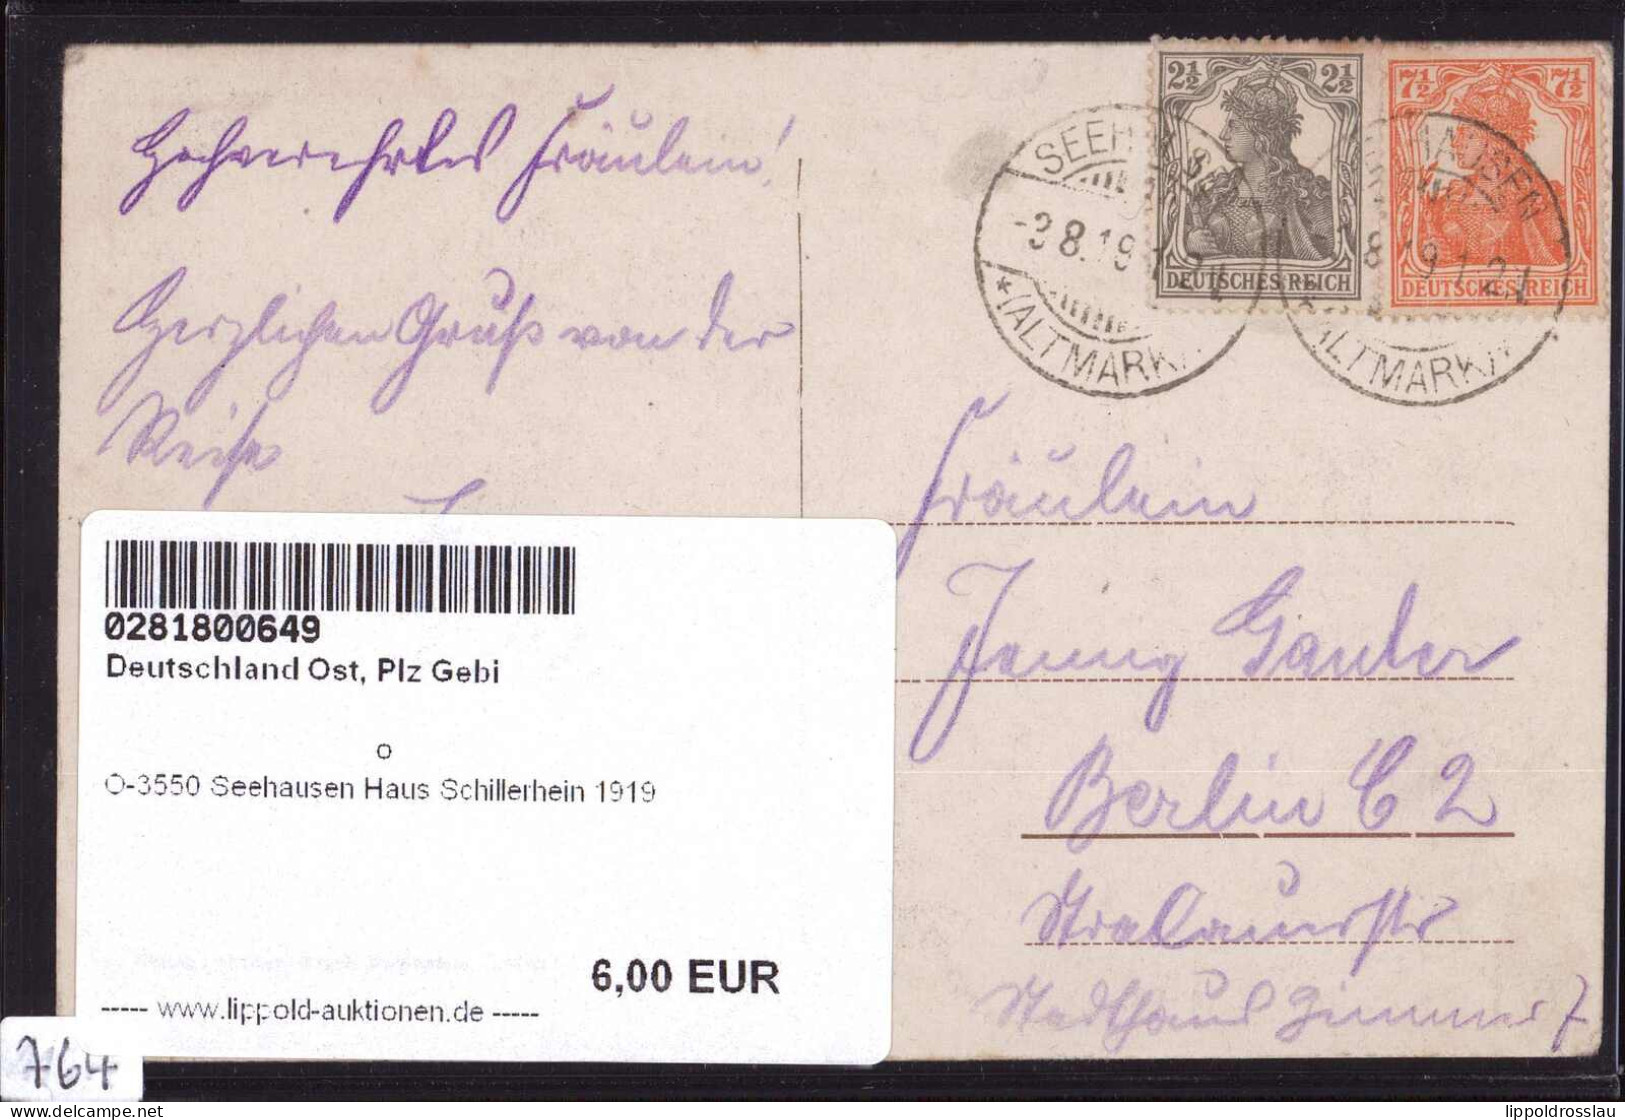 Gest. O-3550 Seehausen Haus Schillerhein 1919 - Osterburg